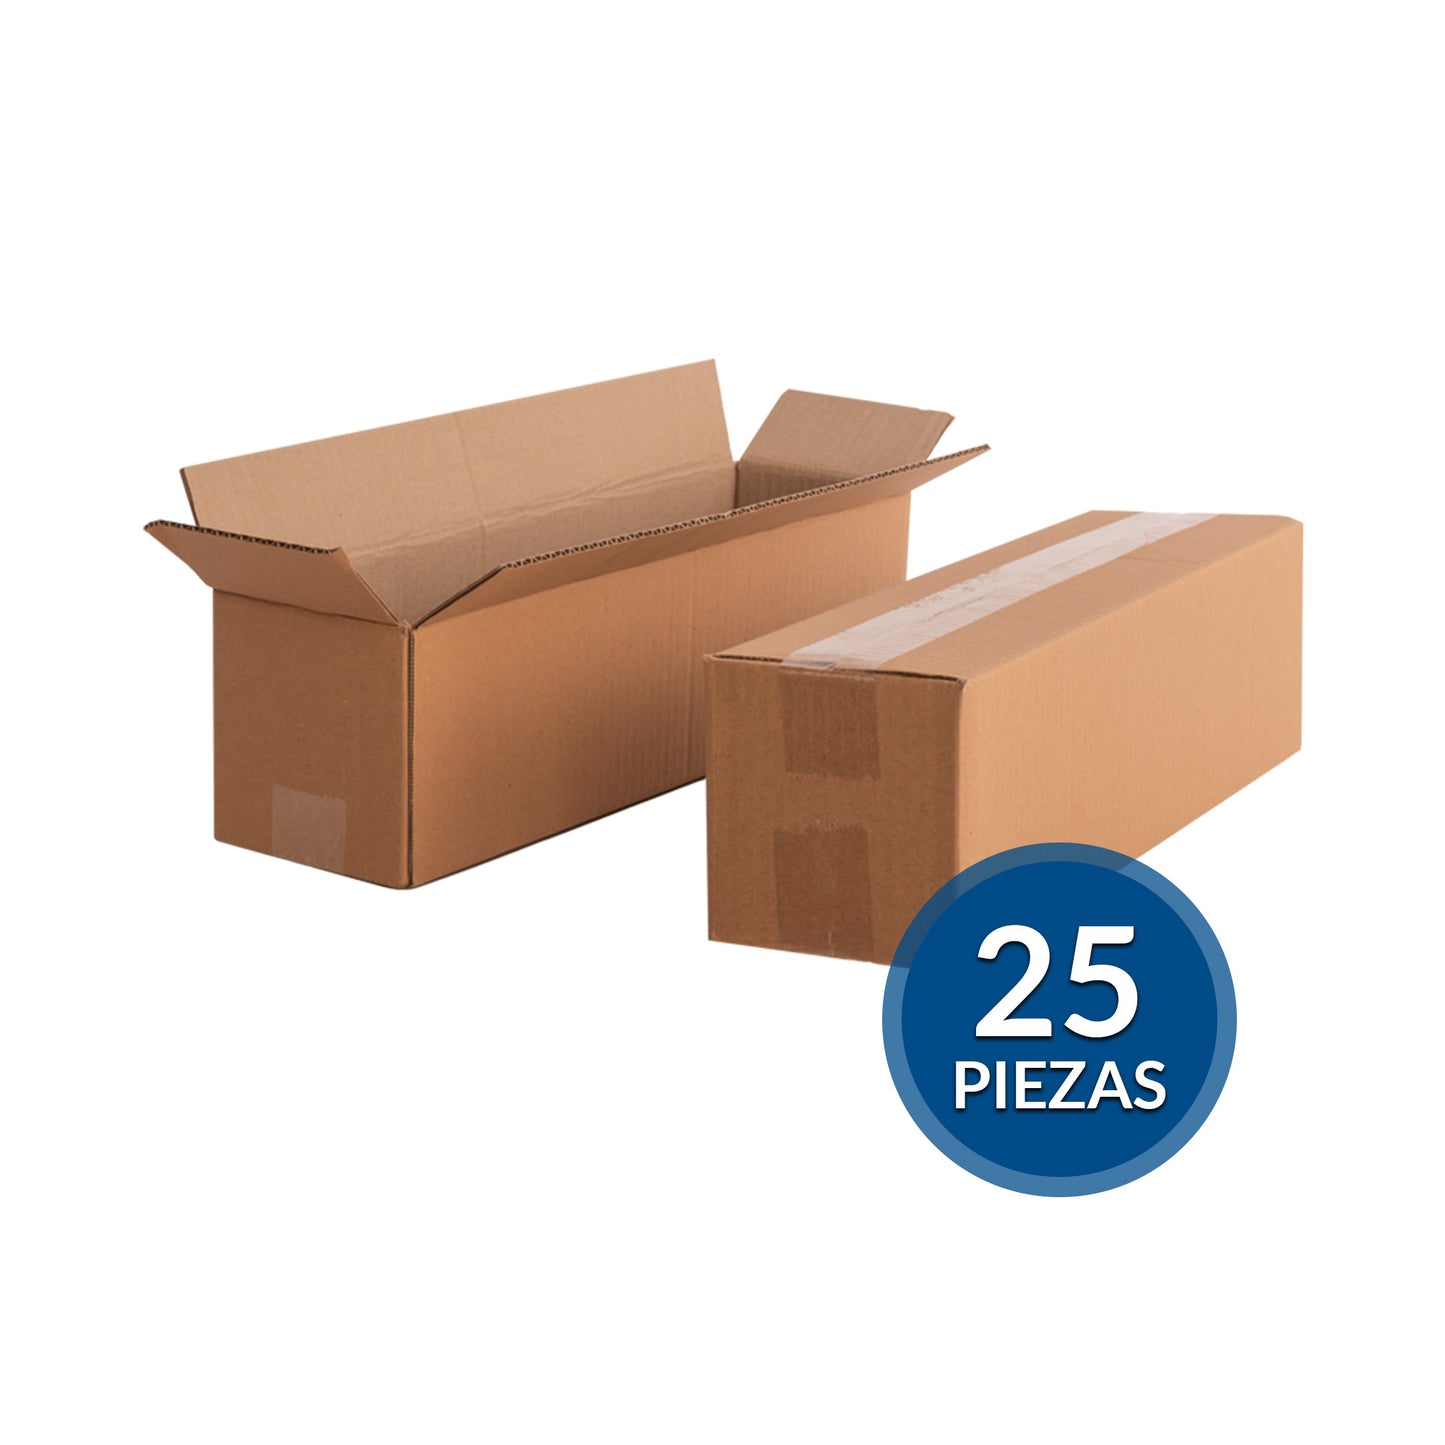 Cajas de cartón para envíos #25